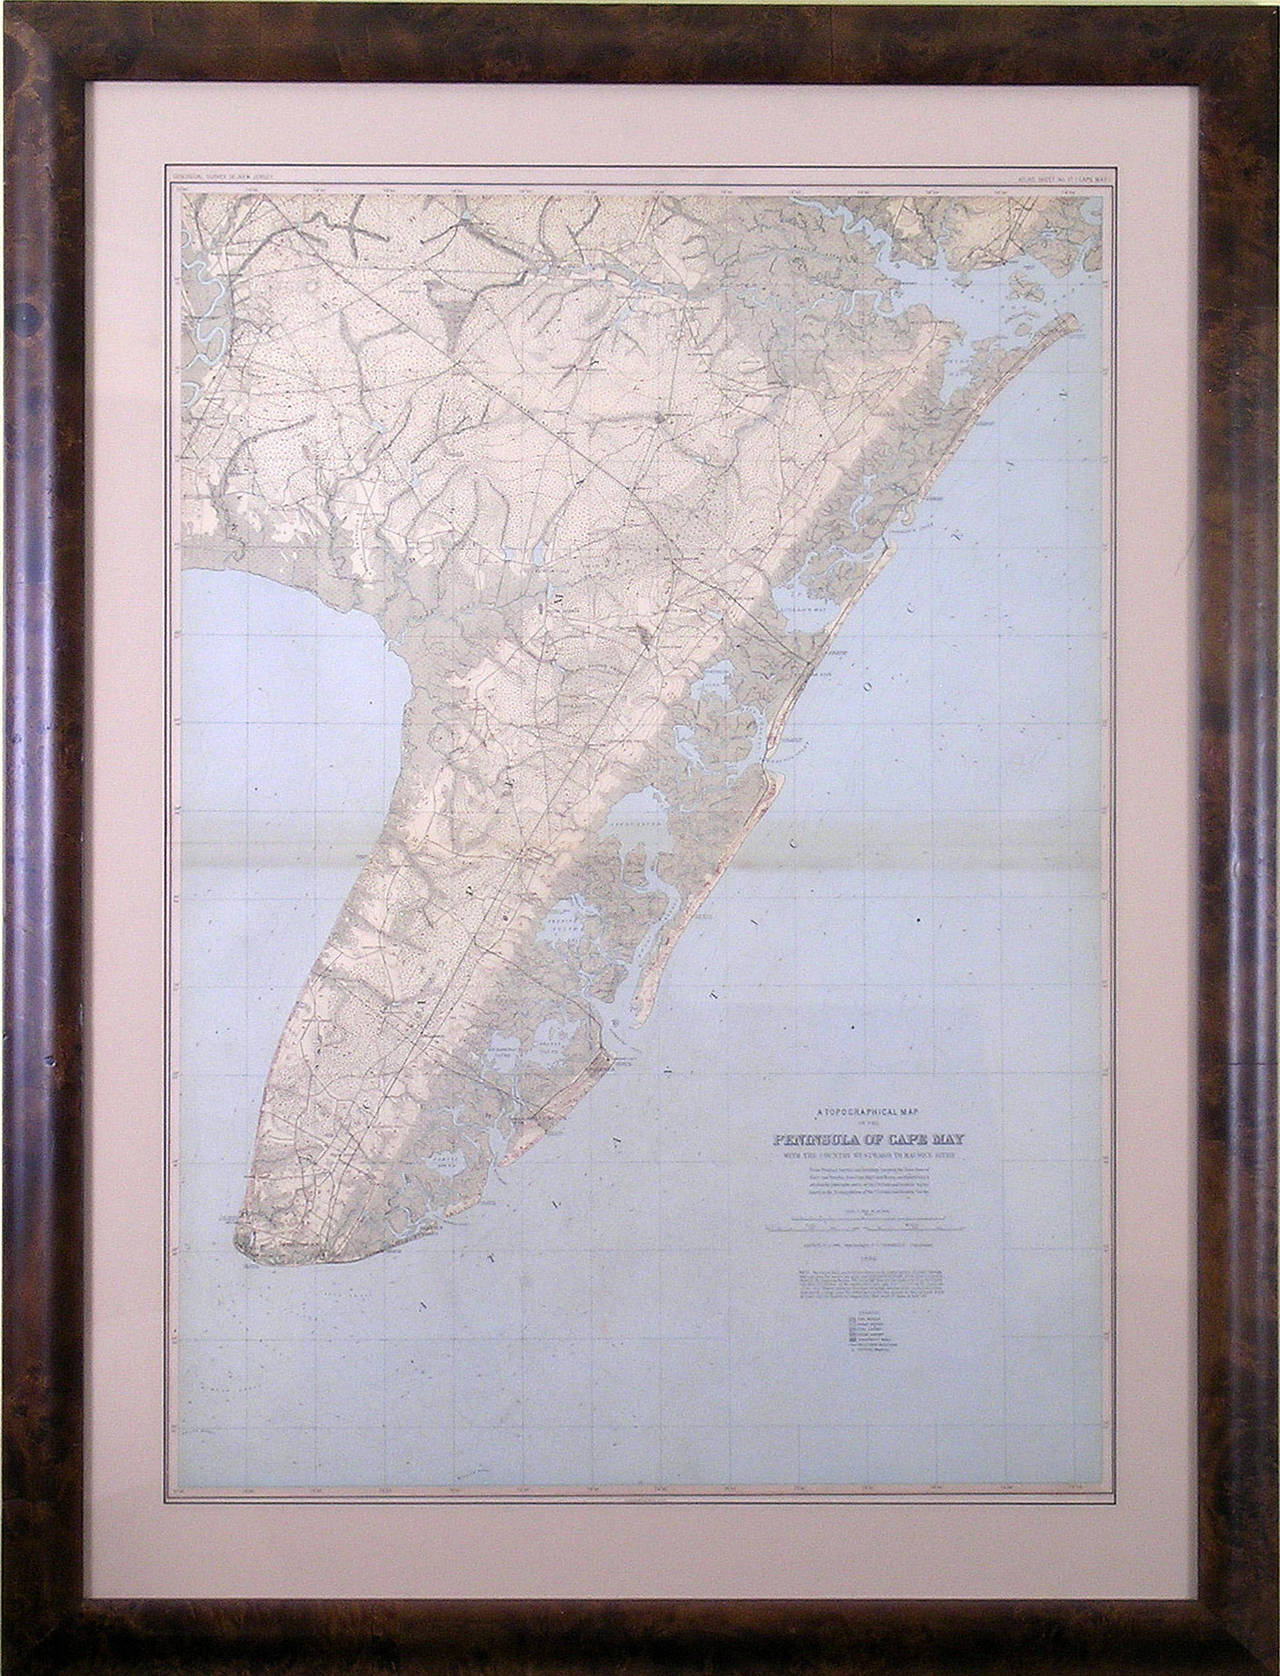 Peninsula of Cape May - Print by Julius Bien